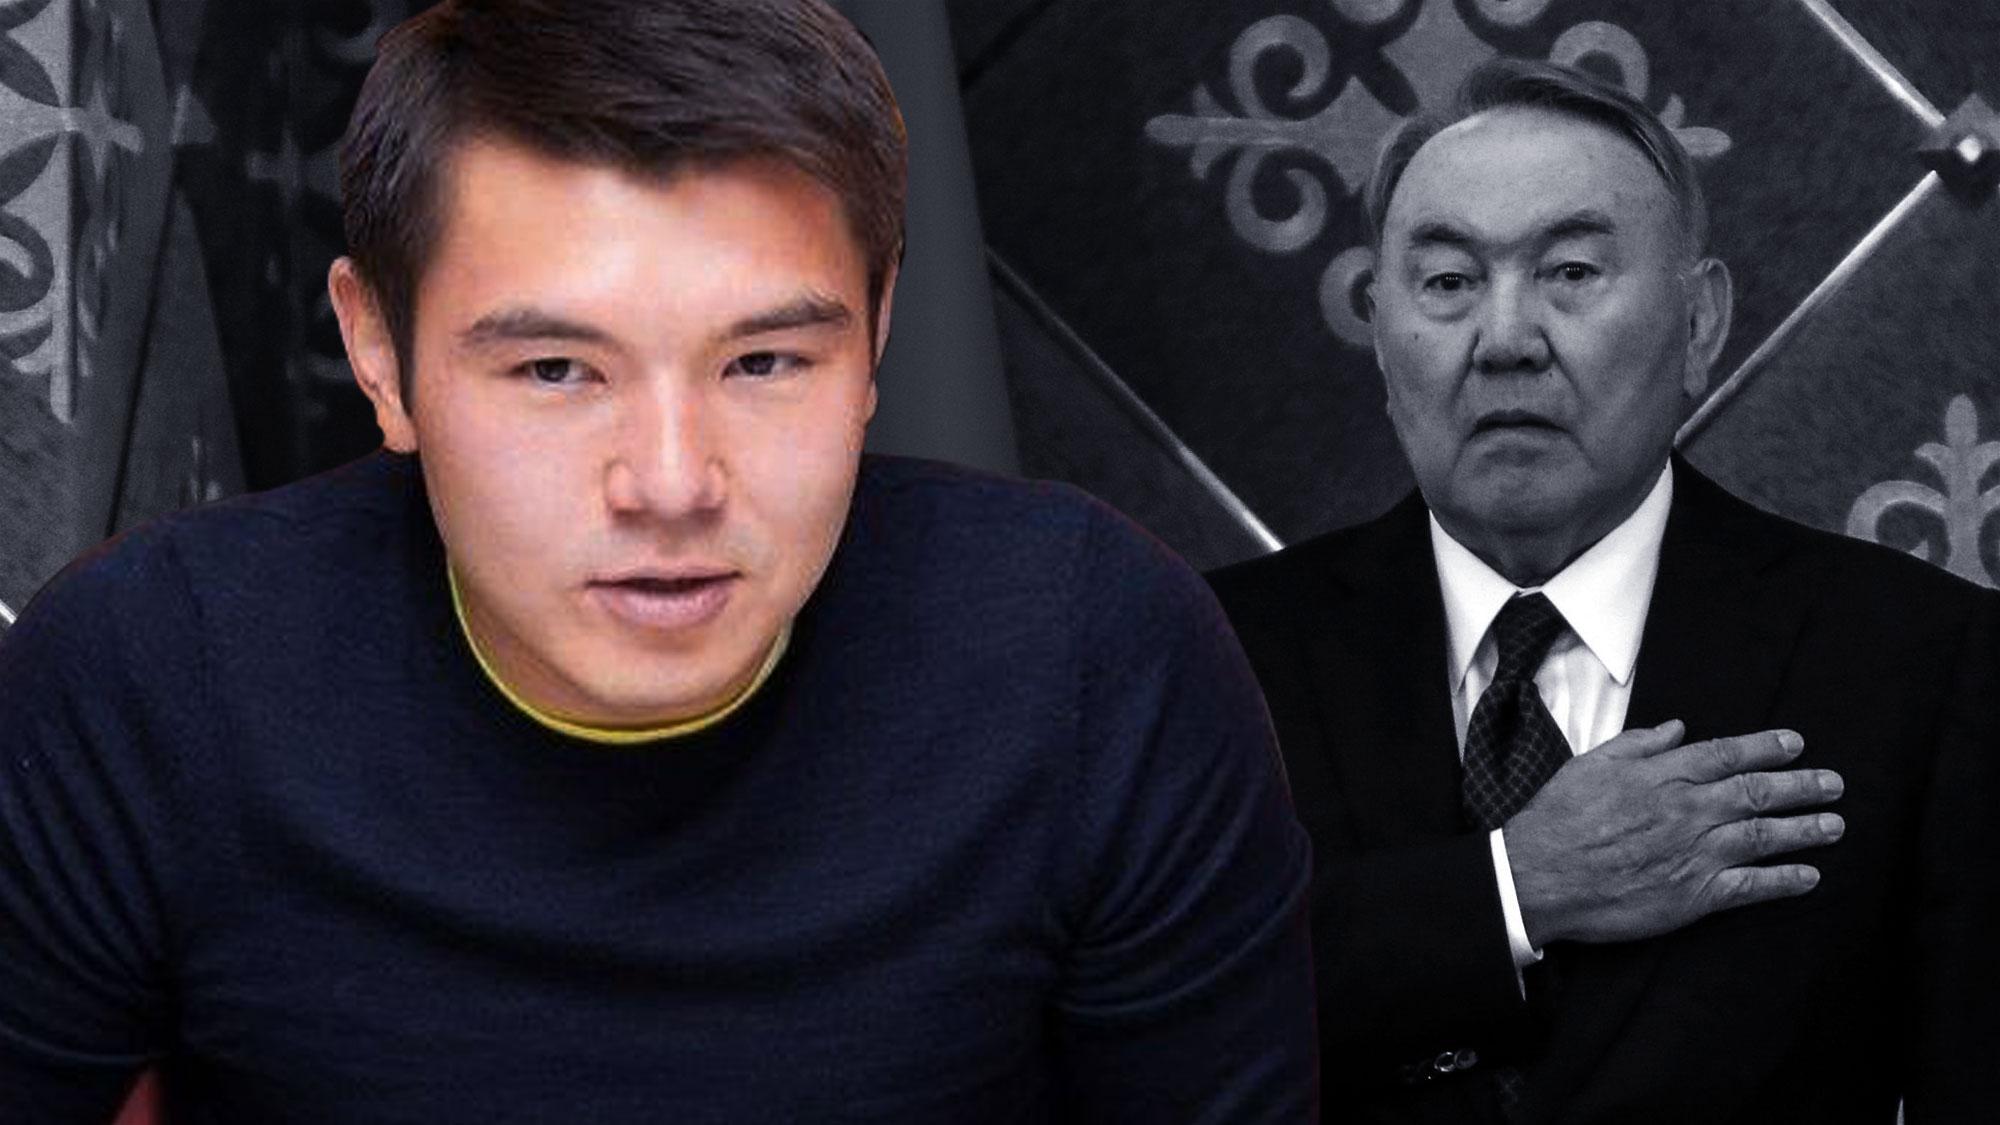 Внук Назарбаева заявил, что глава Казахстана завербован магами и агентами ЦРУ. Как относятся к его предположениям дома?